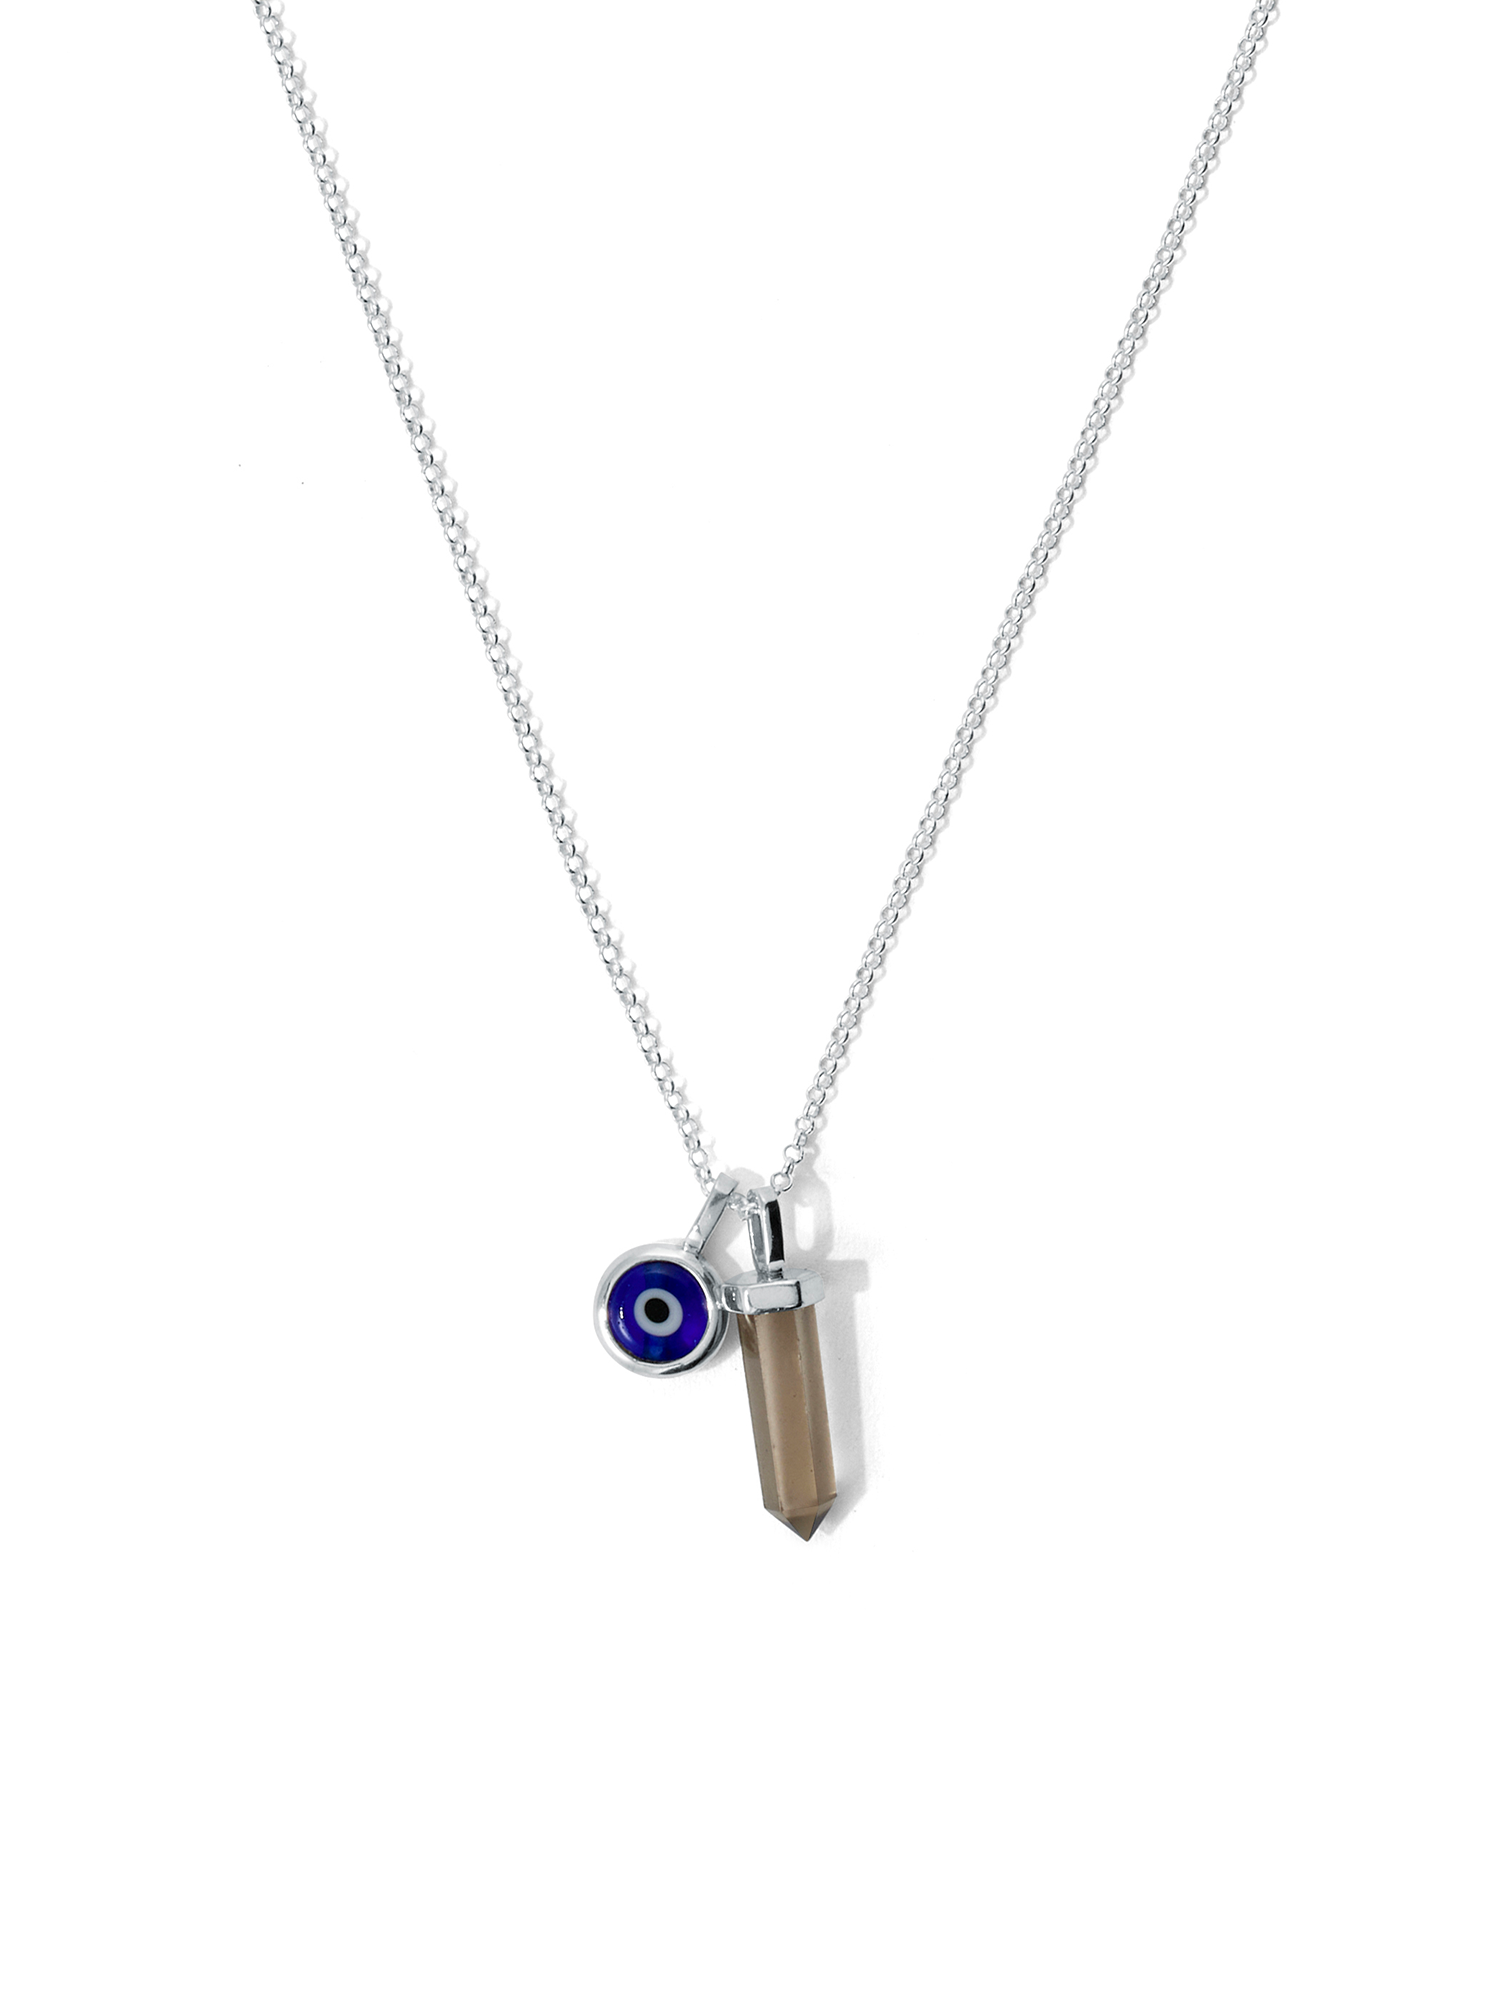 protection necklace | smoky quartz